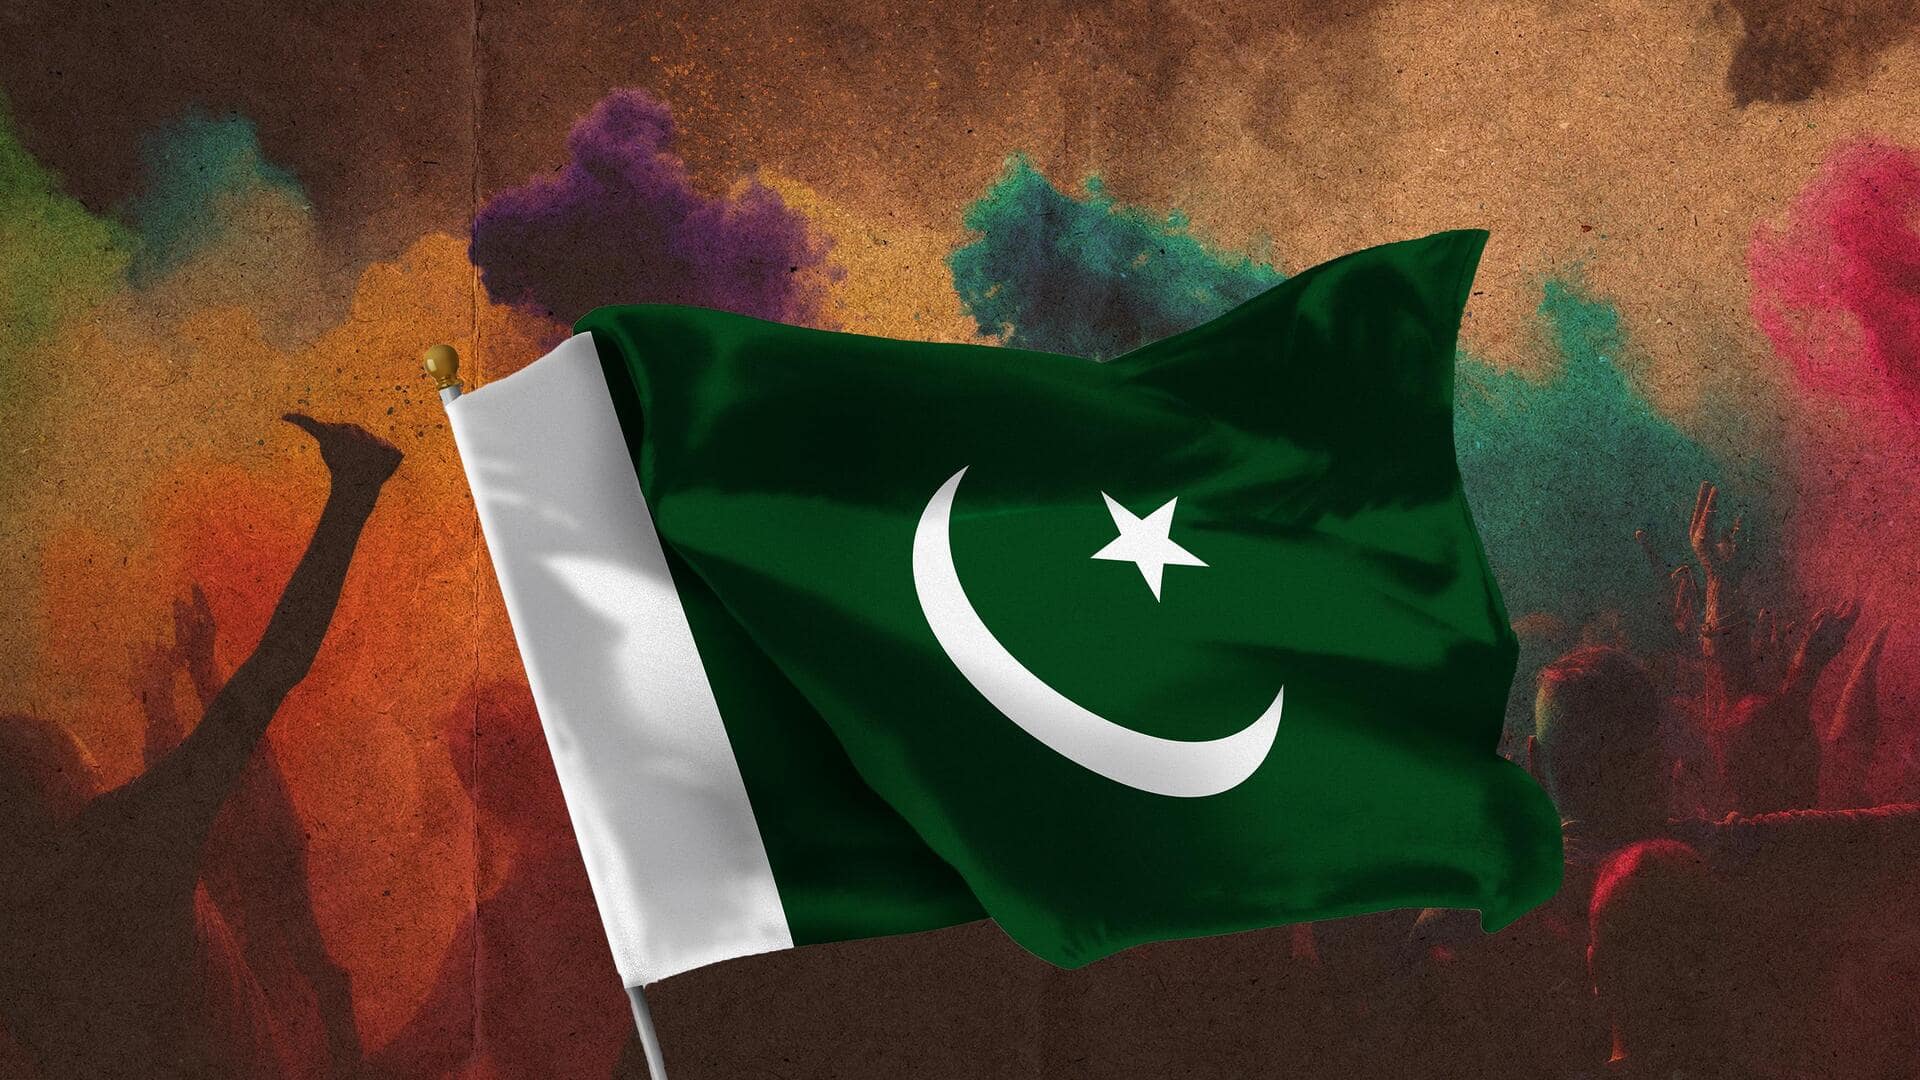 पाकिस्तान: शिक्षण संस्थानों में होली पर प्रतिबंध लगाया गया, सरकार ने इस्लामी पहचान के खिलाफ बताया 